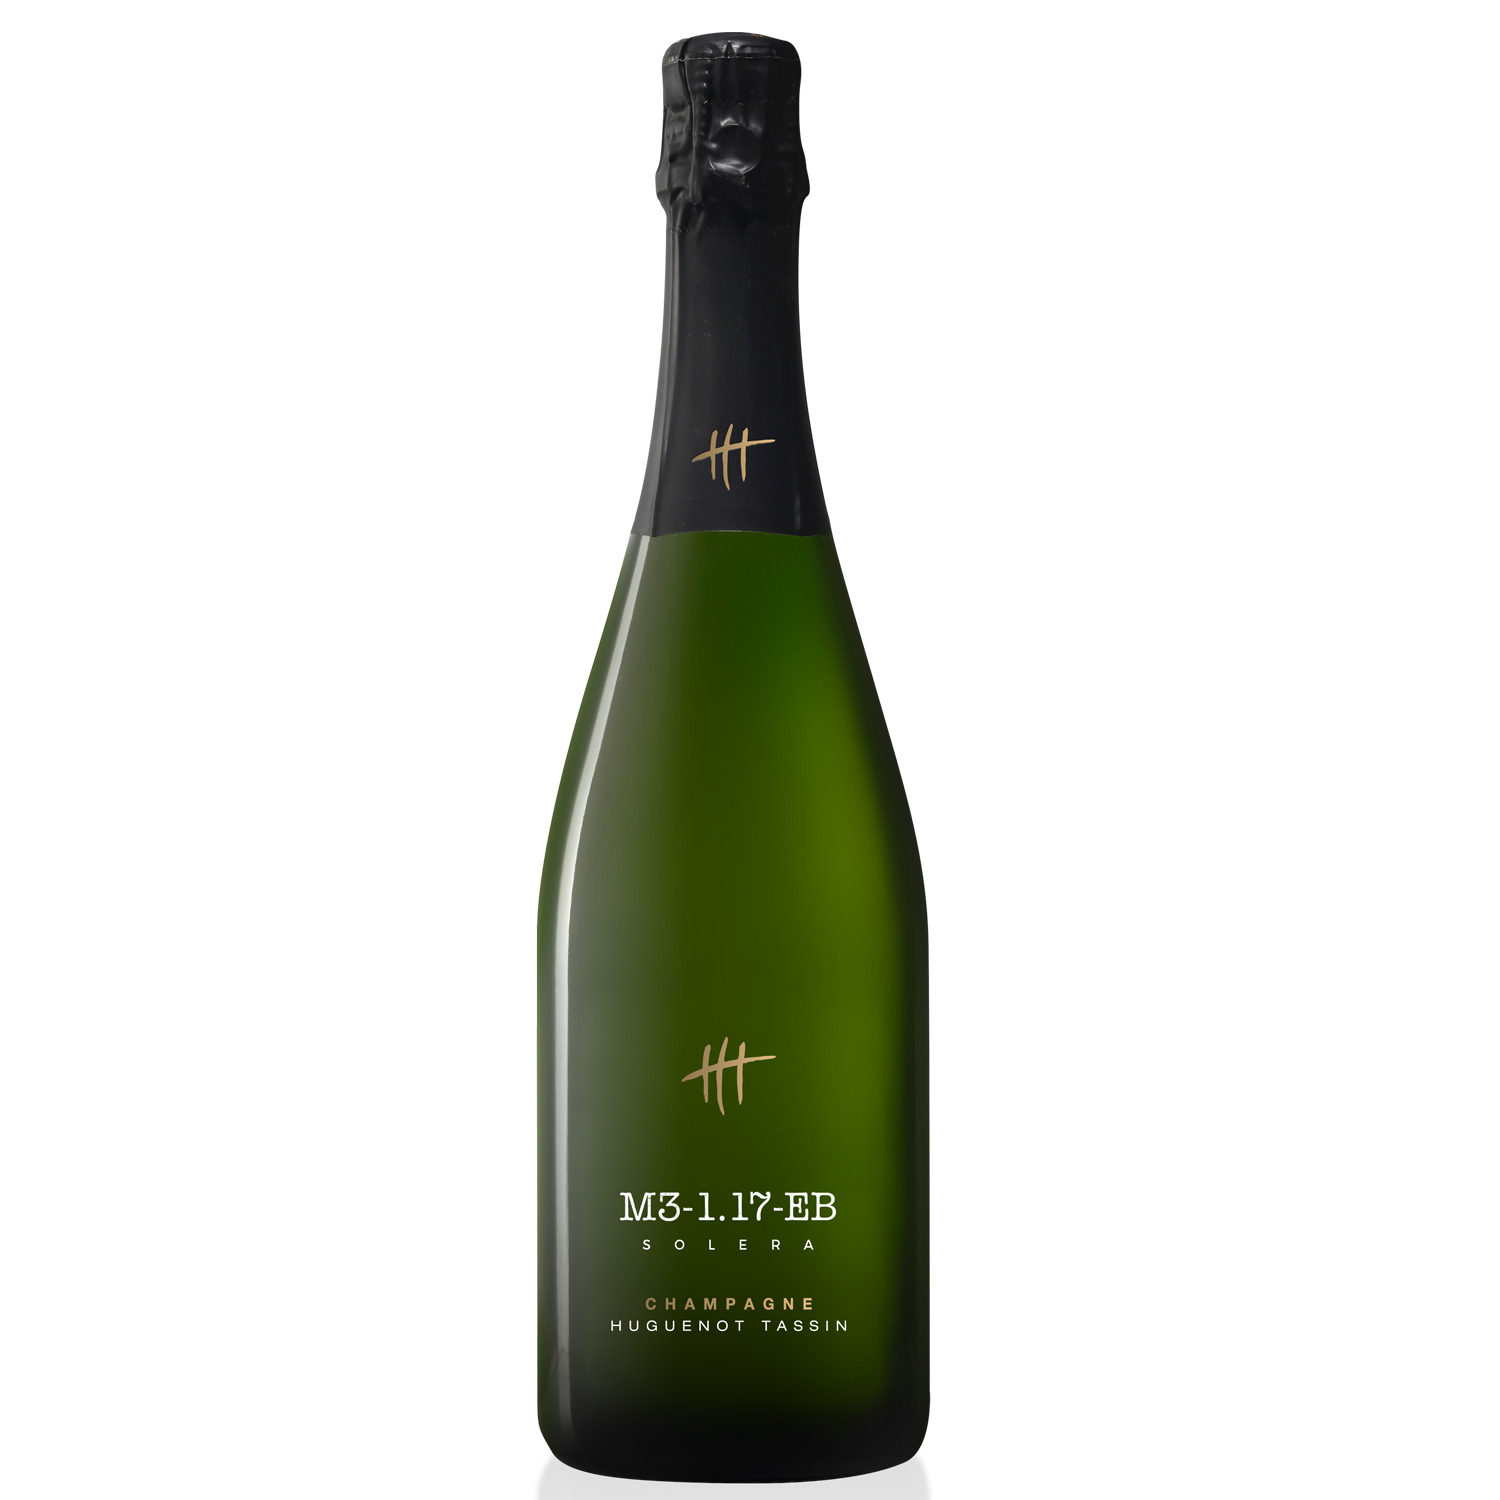 Champagne Huguenot-Tassin: M3 1.17 EB Solera